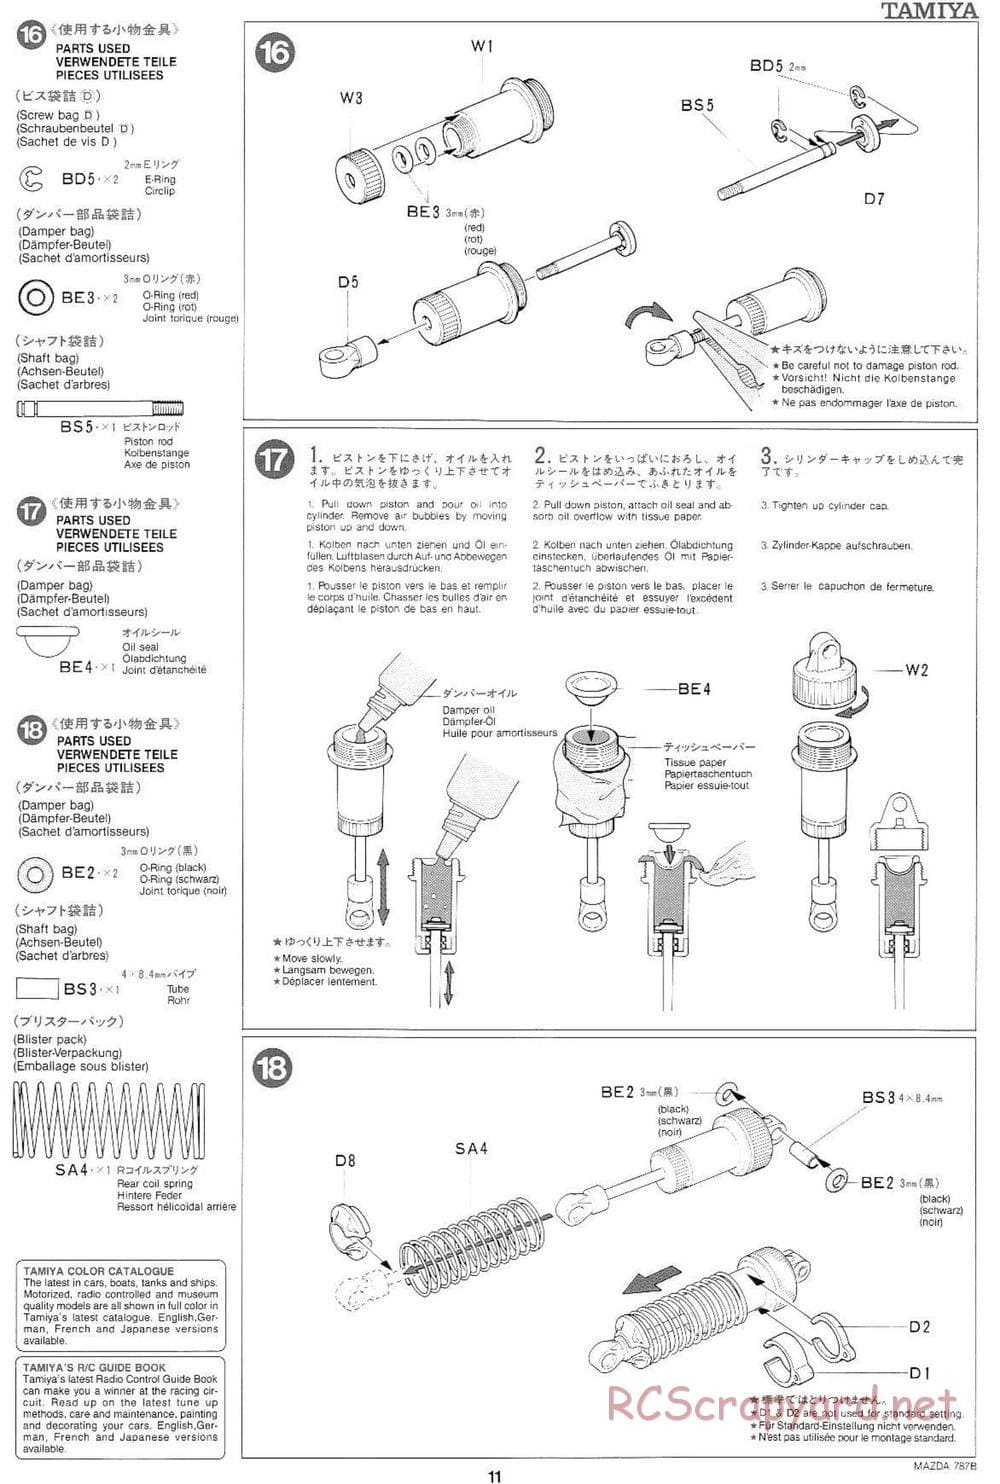 Tamiya - Mazda 787B - Group-C Chassis - Manual - Page 11